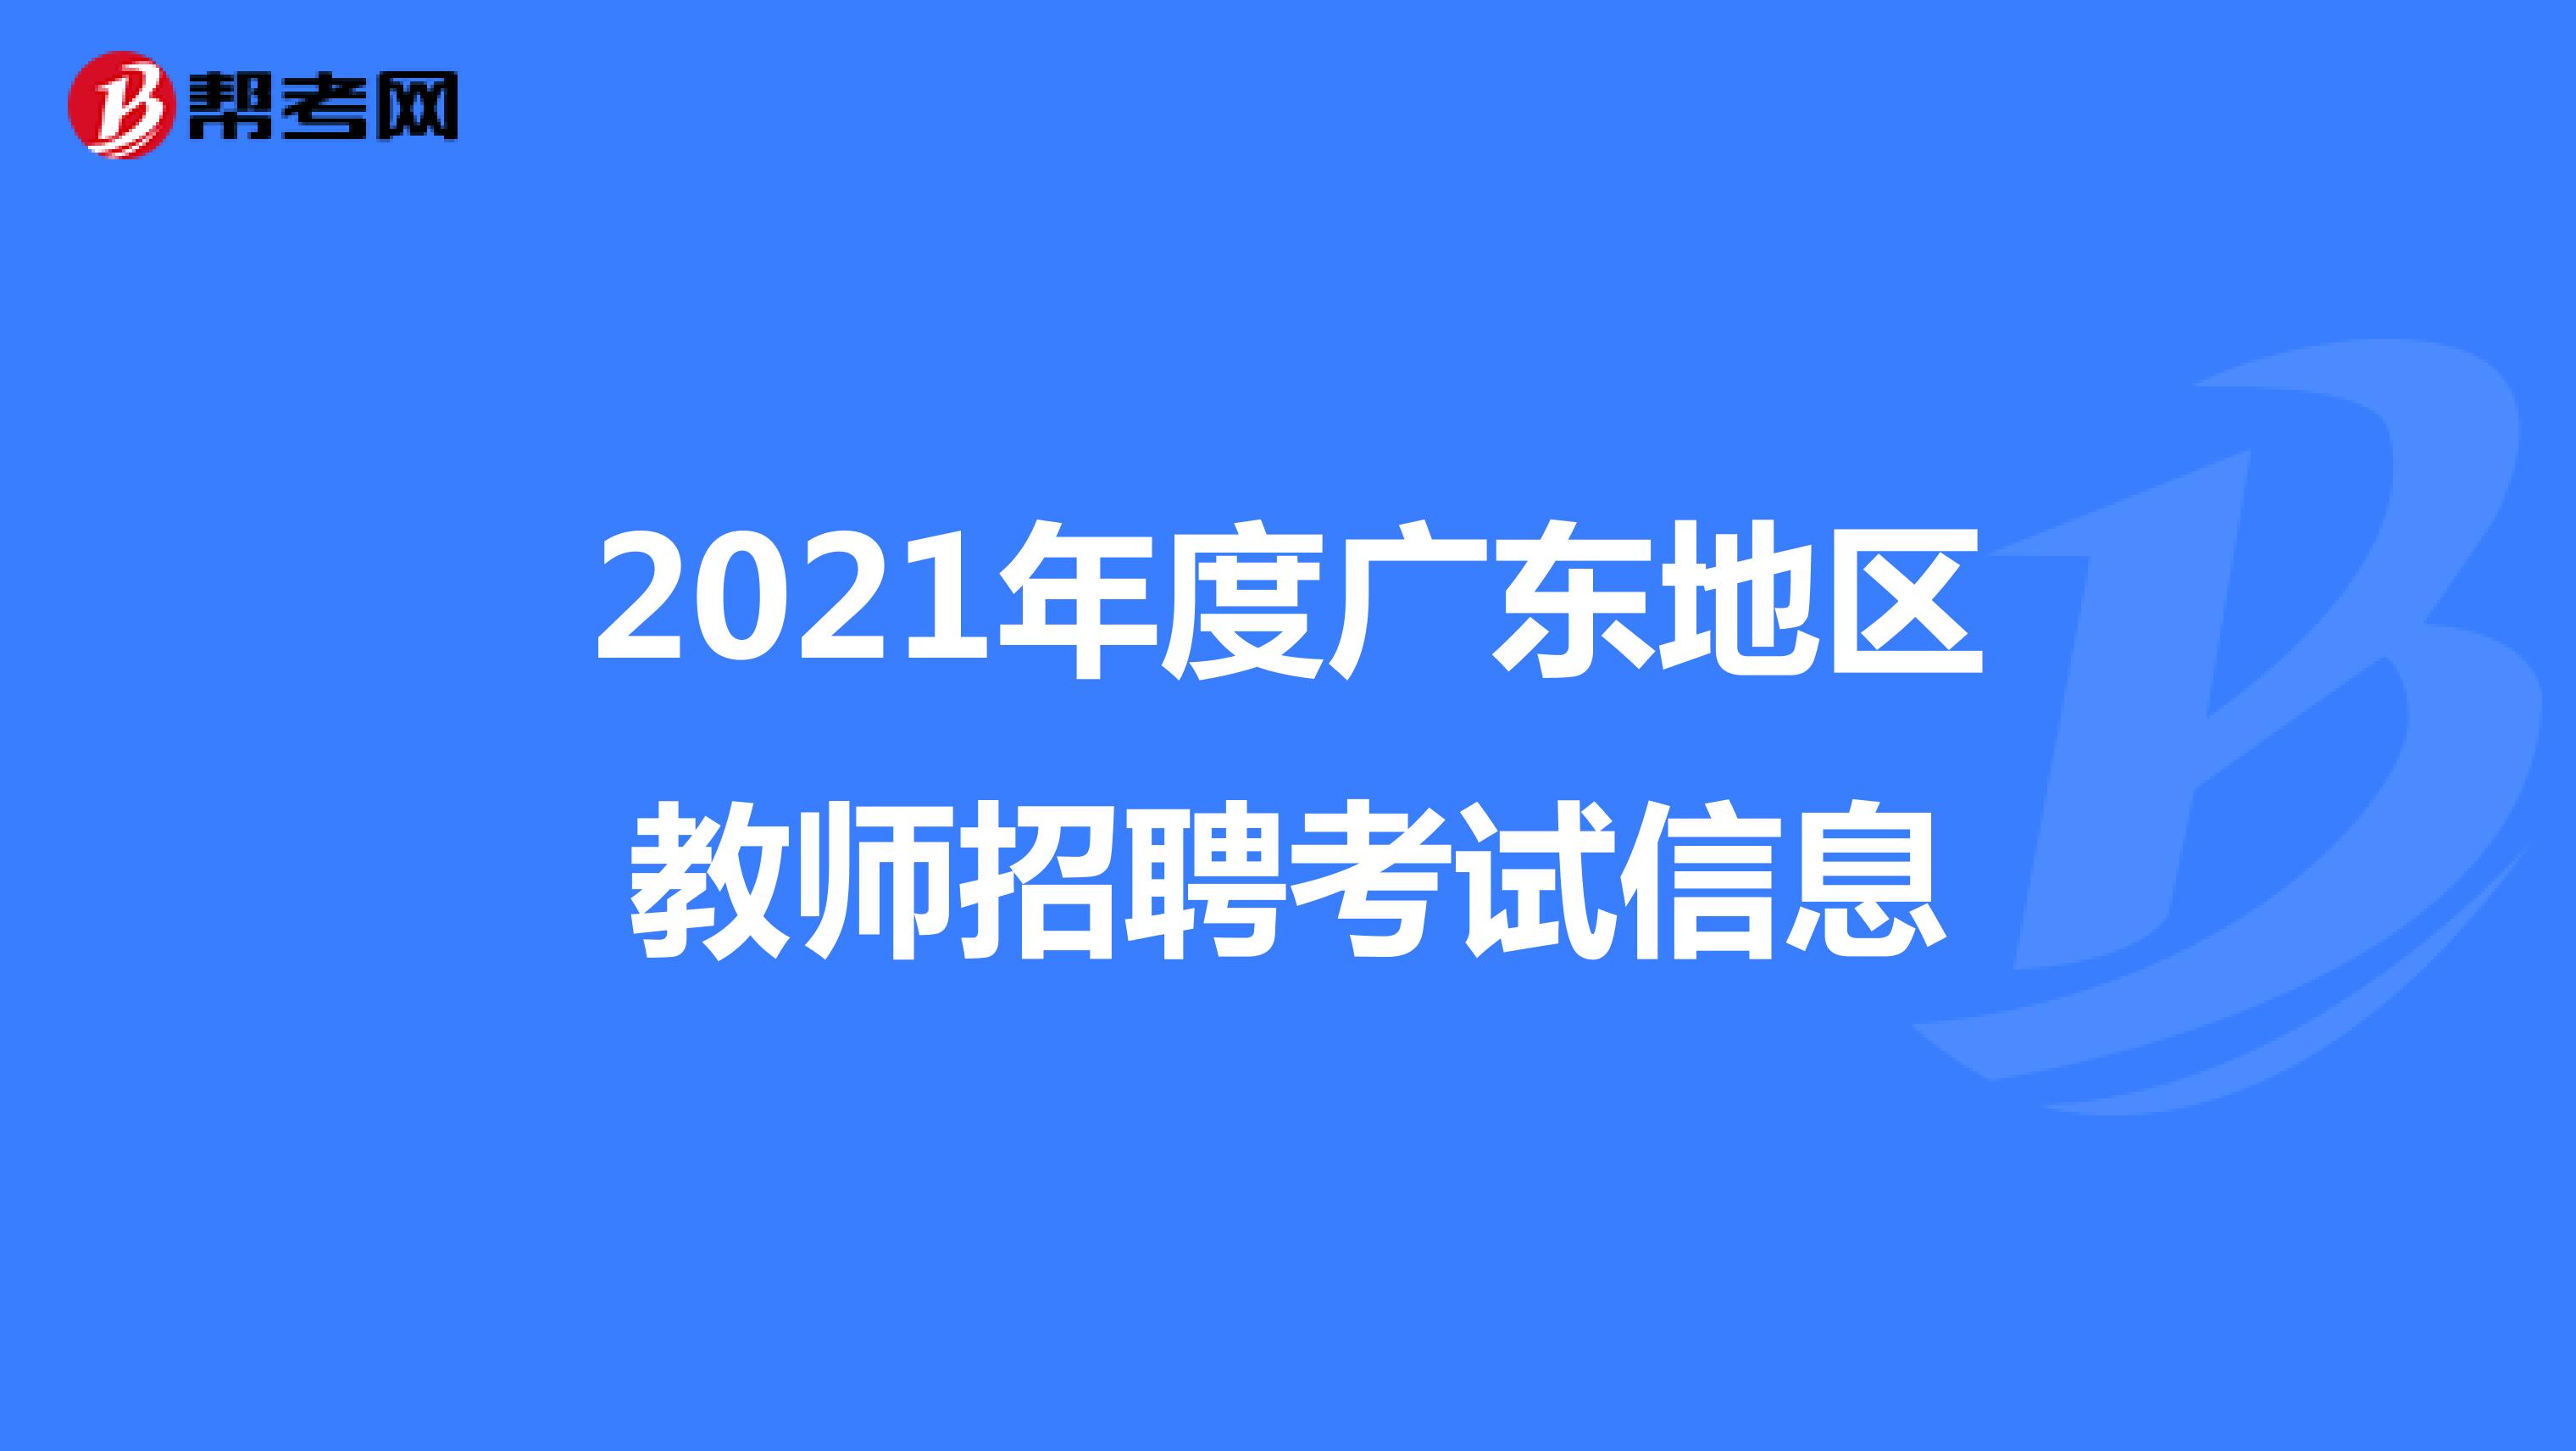 2021年度广东地区教师招聘考试信息